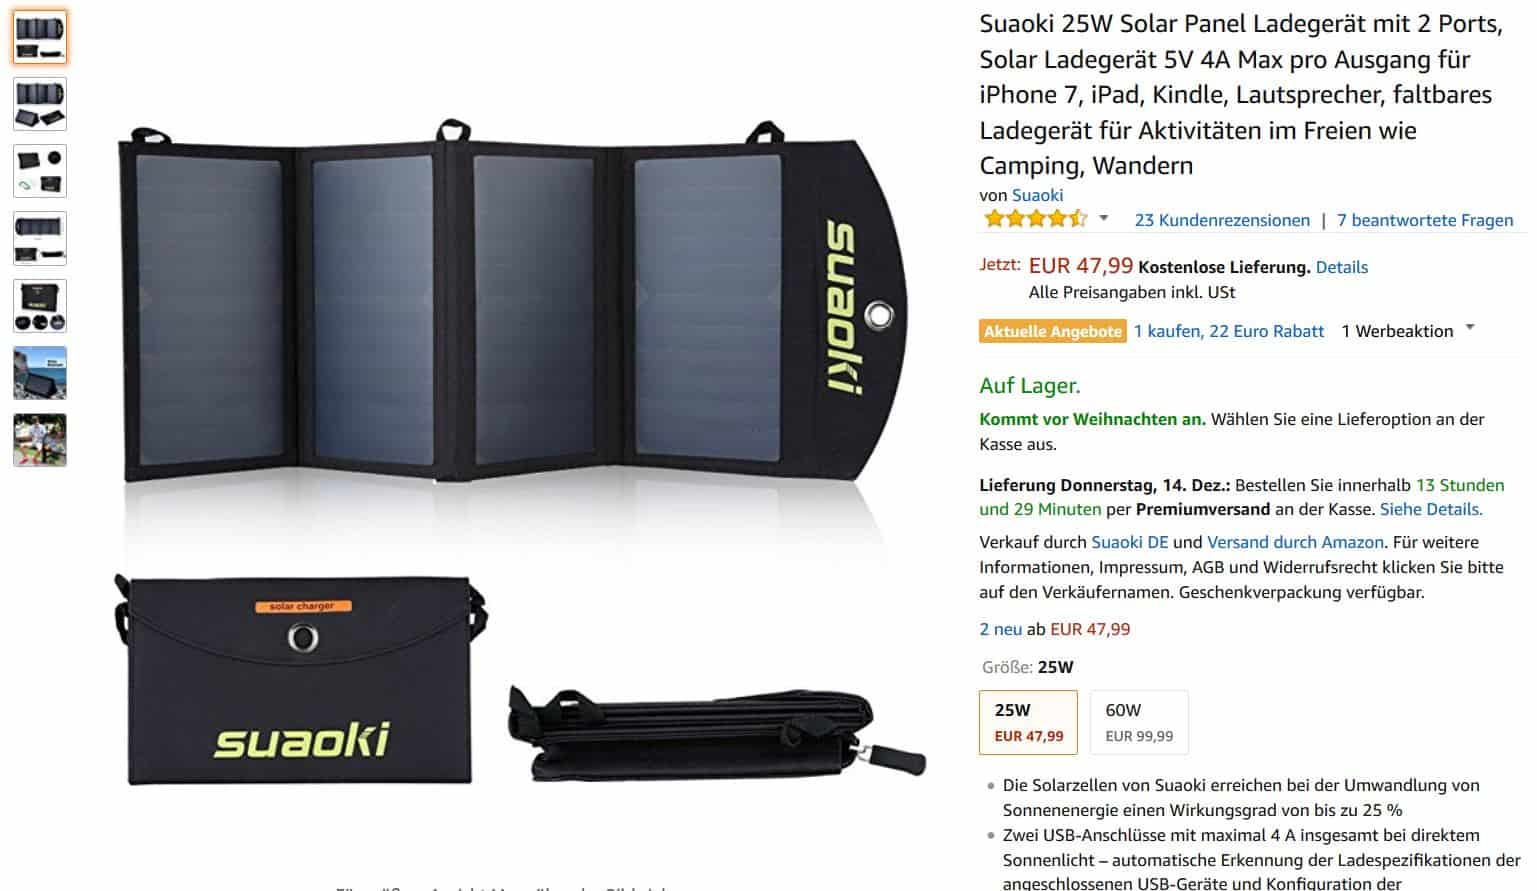 Deal!! SUAOKI 25 Watt Solar Ladegerät bei Amazon dank neuem Gutschein für nur 19,99 Euro + 3,99 Euro Versand!